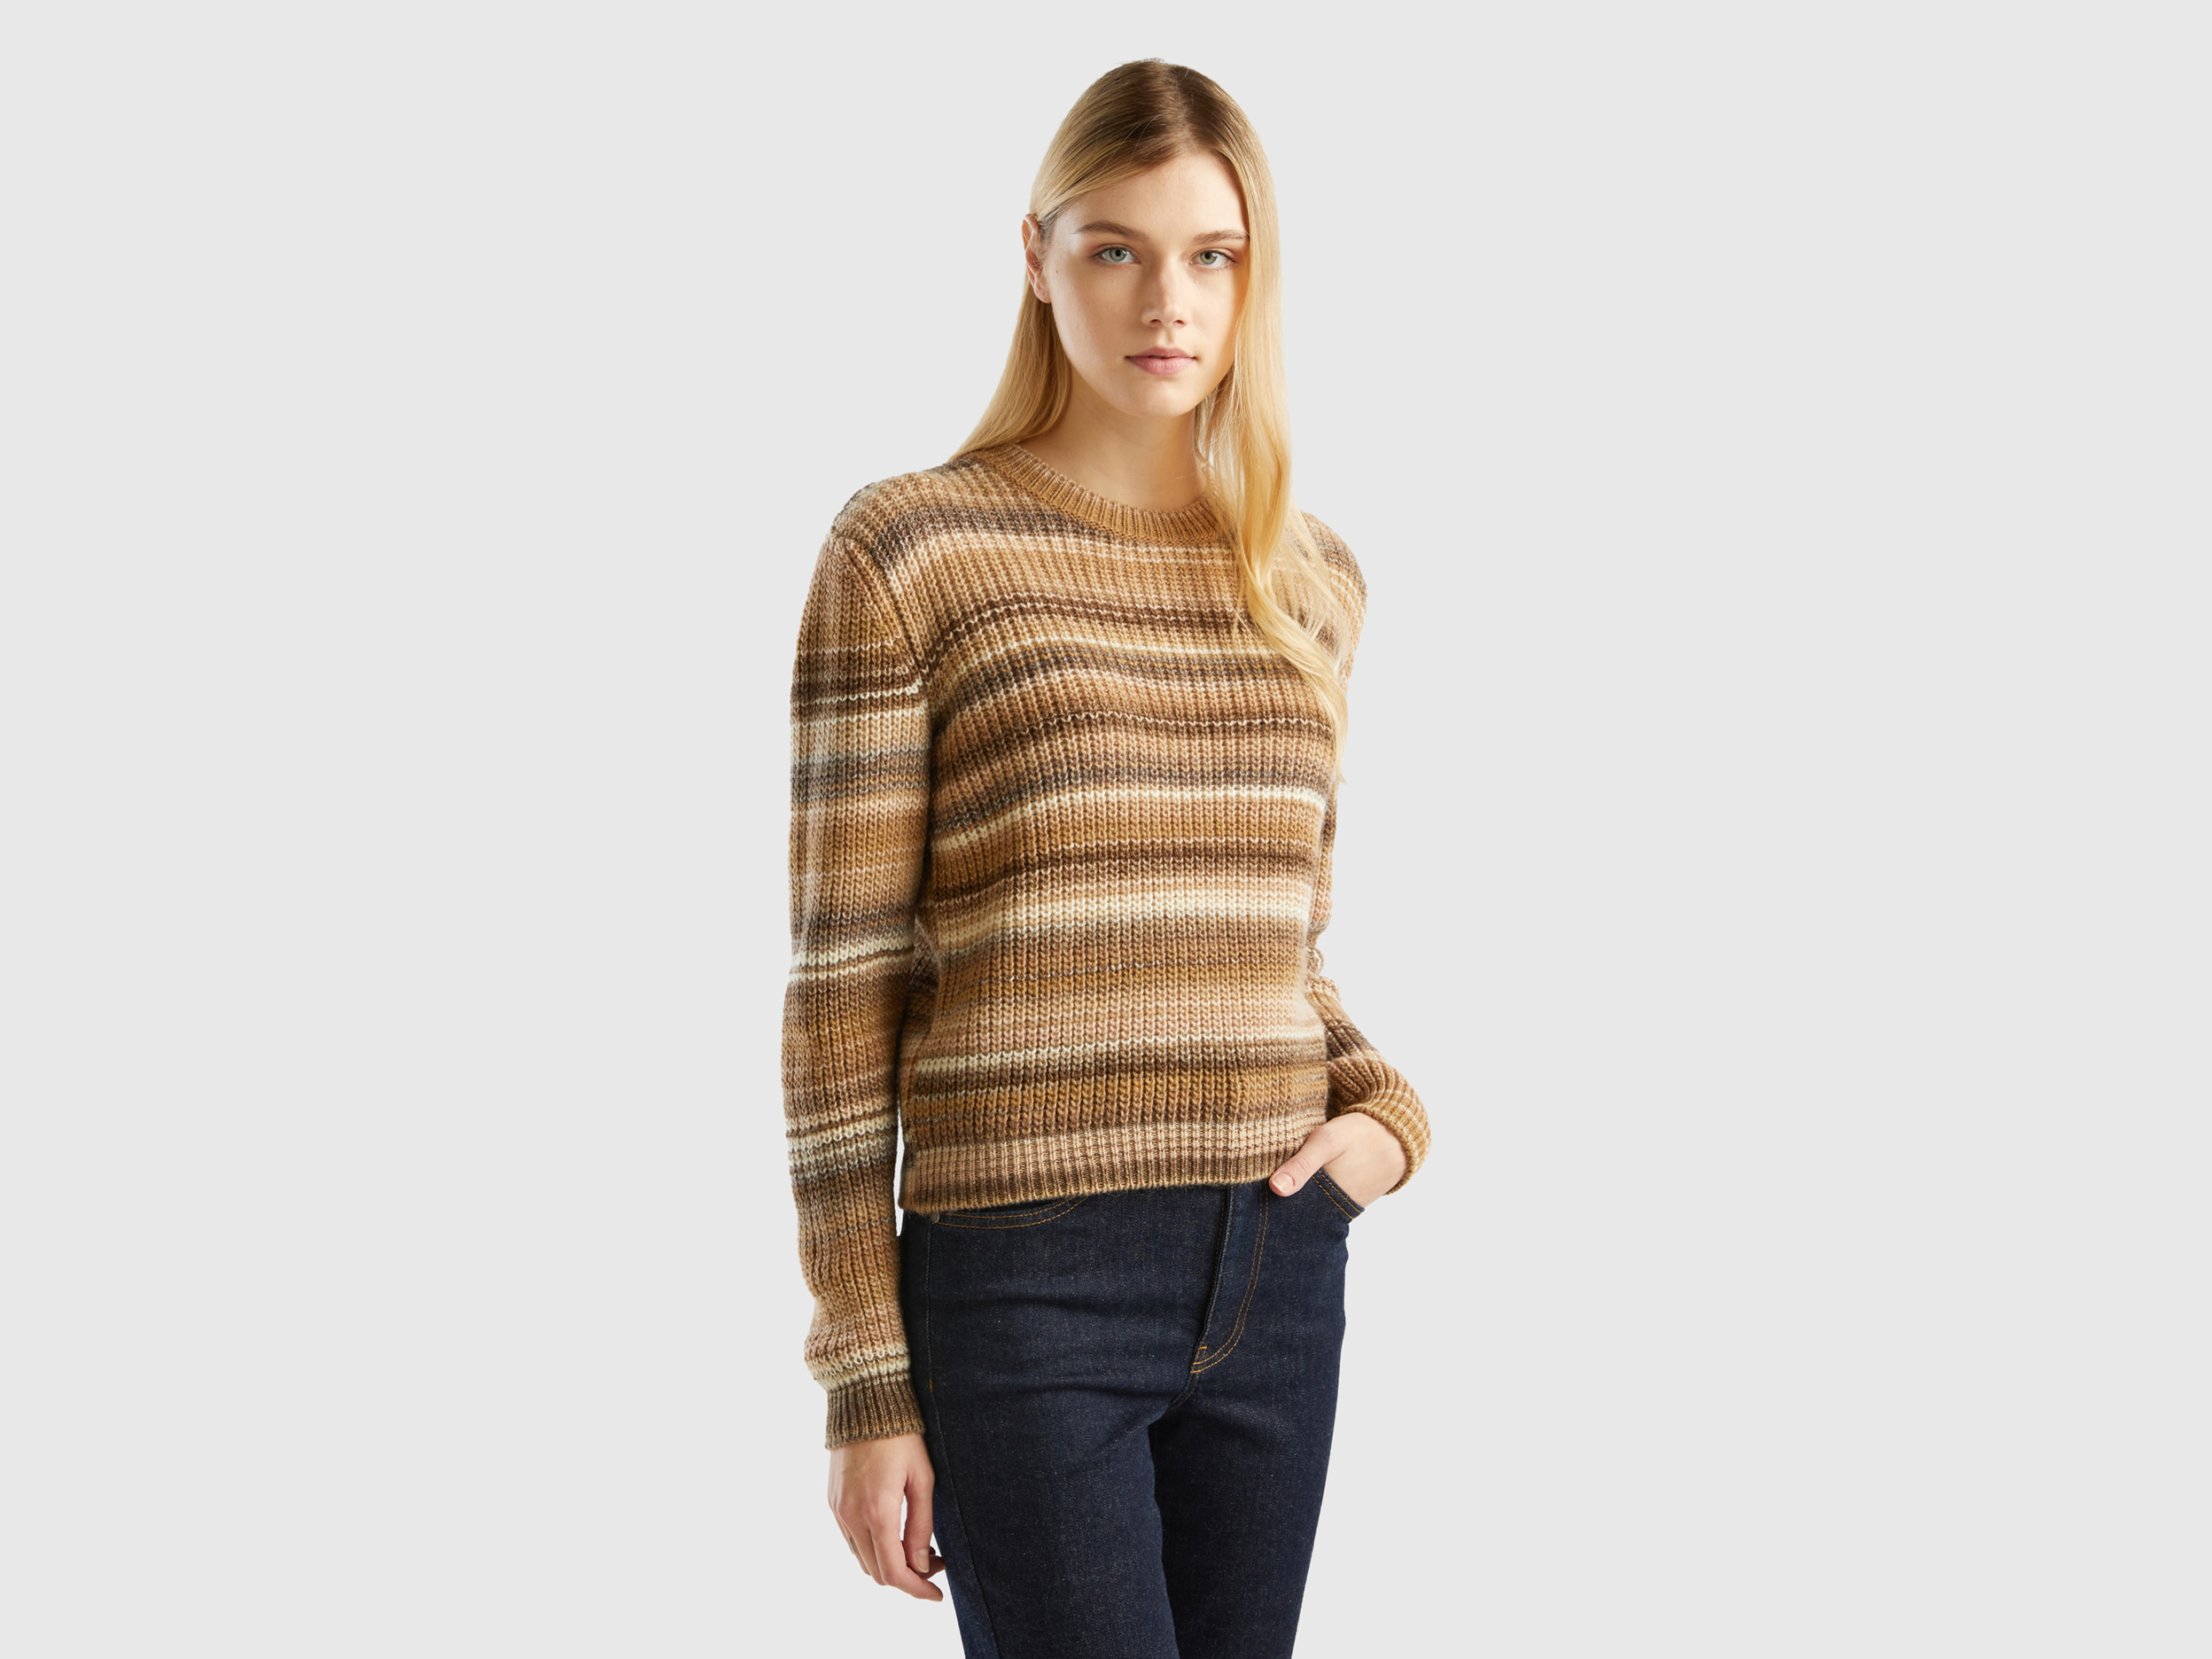 Benetton, Multicolor Striped Sweater, size XS, Multi-color, Women